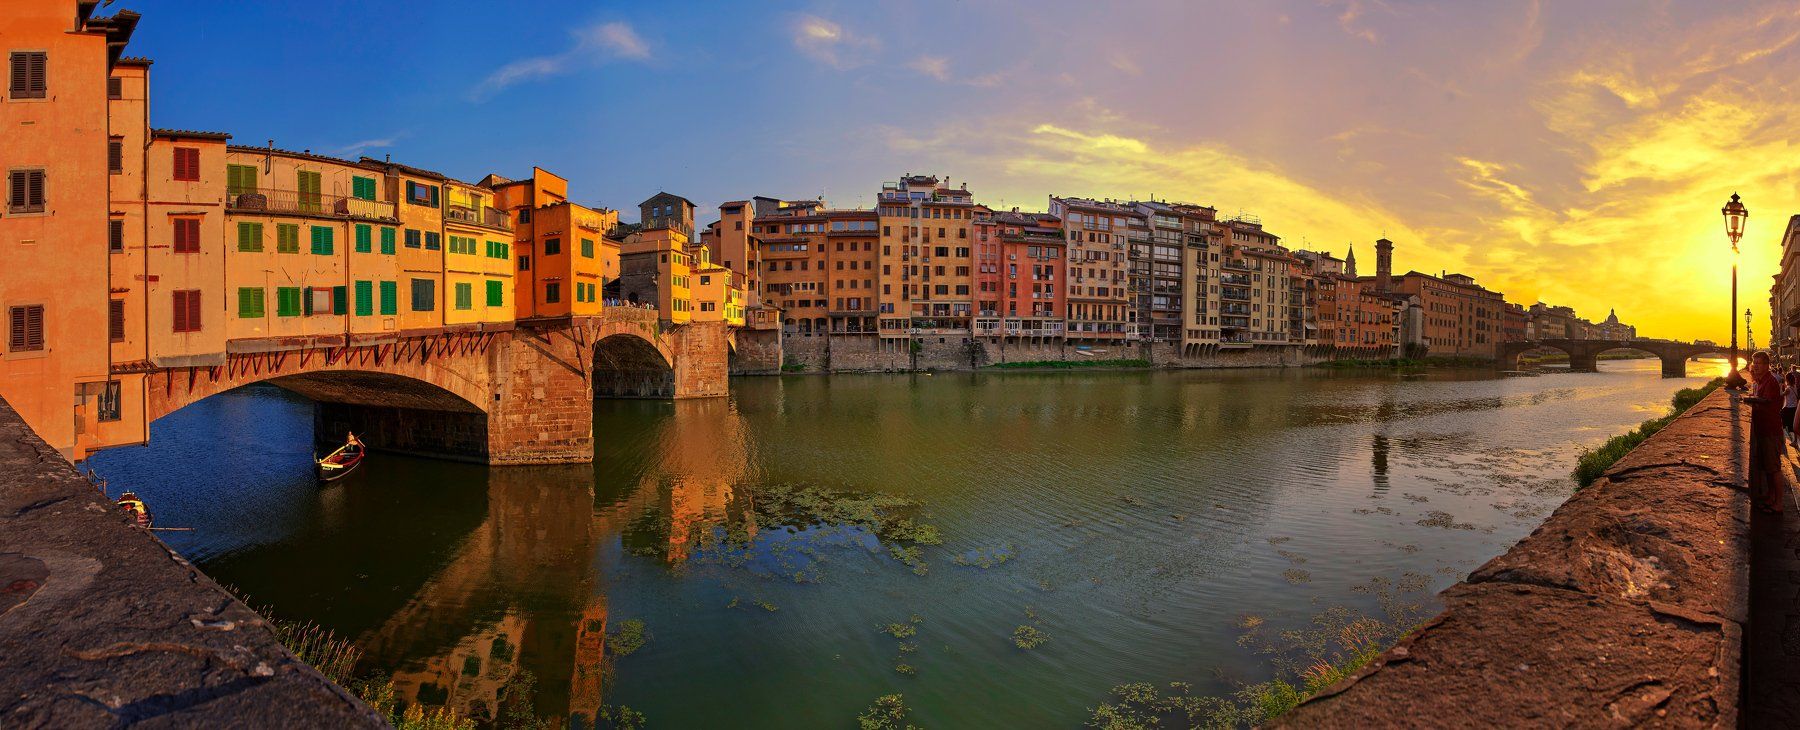 мост понте векио, флоренция, италия, река, панорама, закат,, Babka Yoshka (в миру - Сергей)